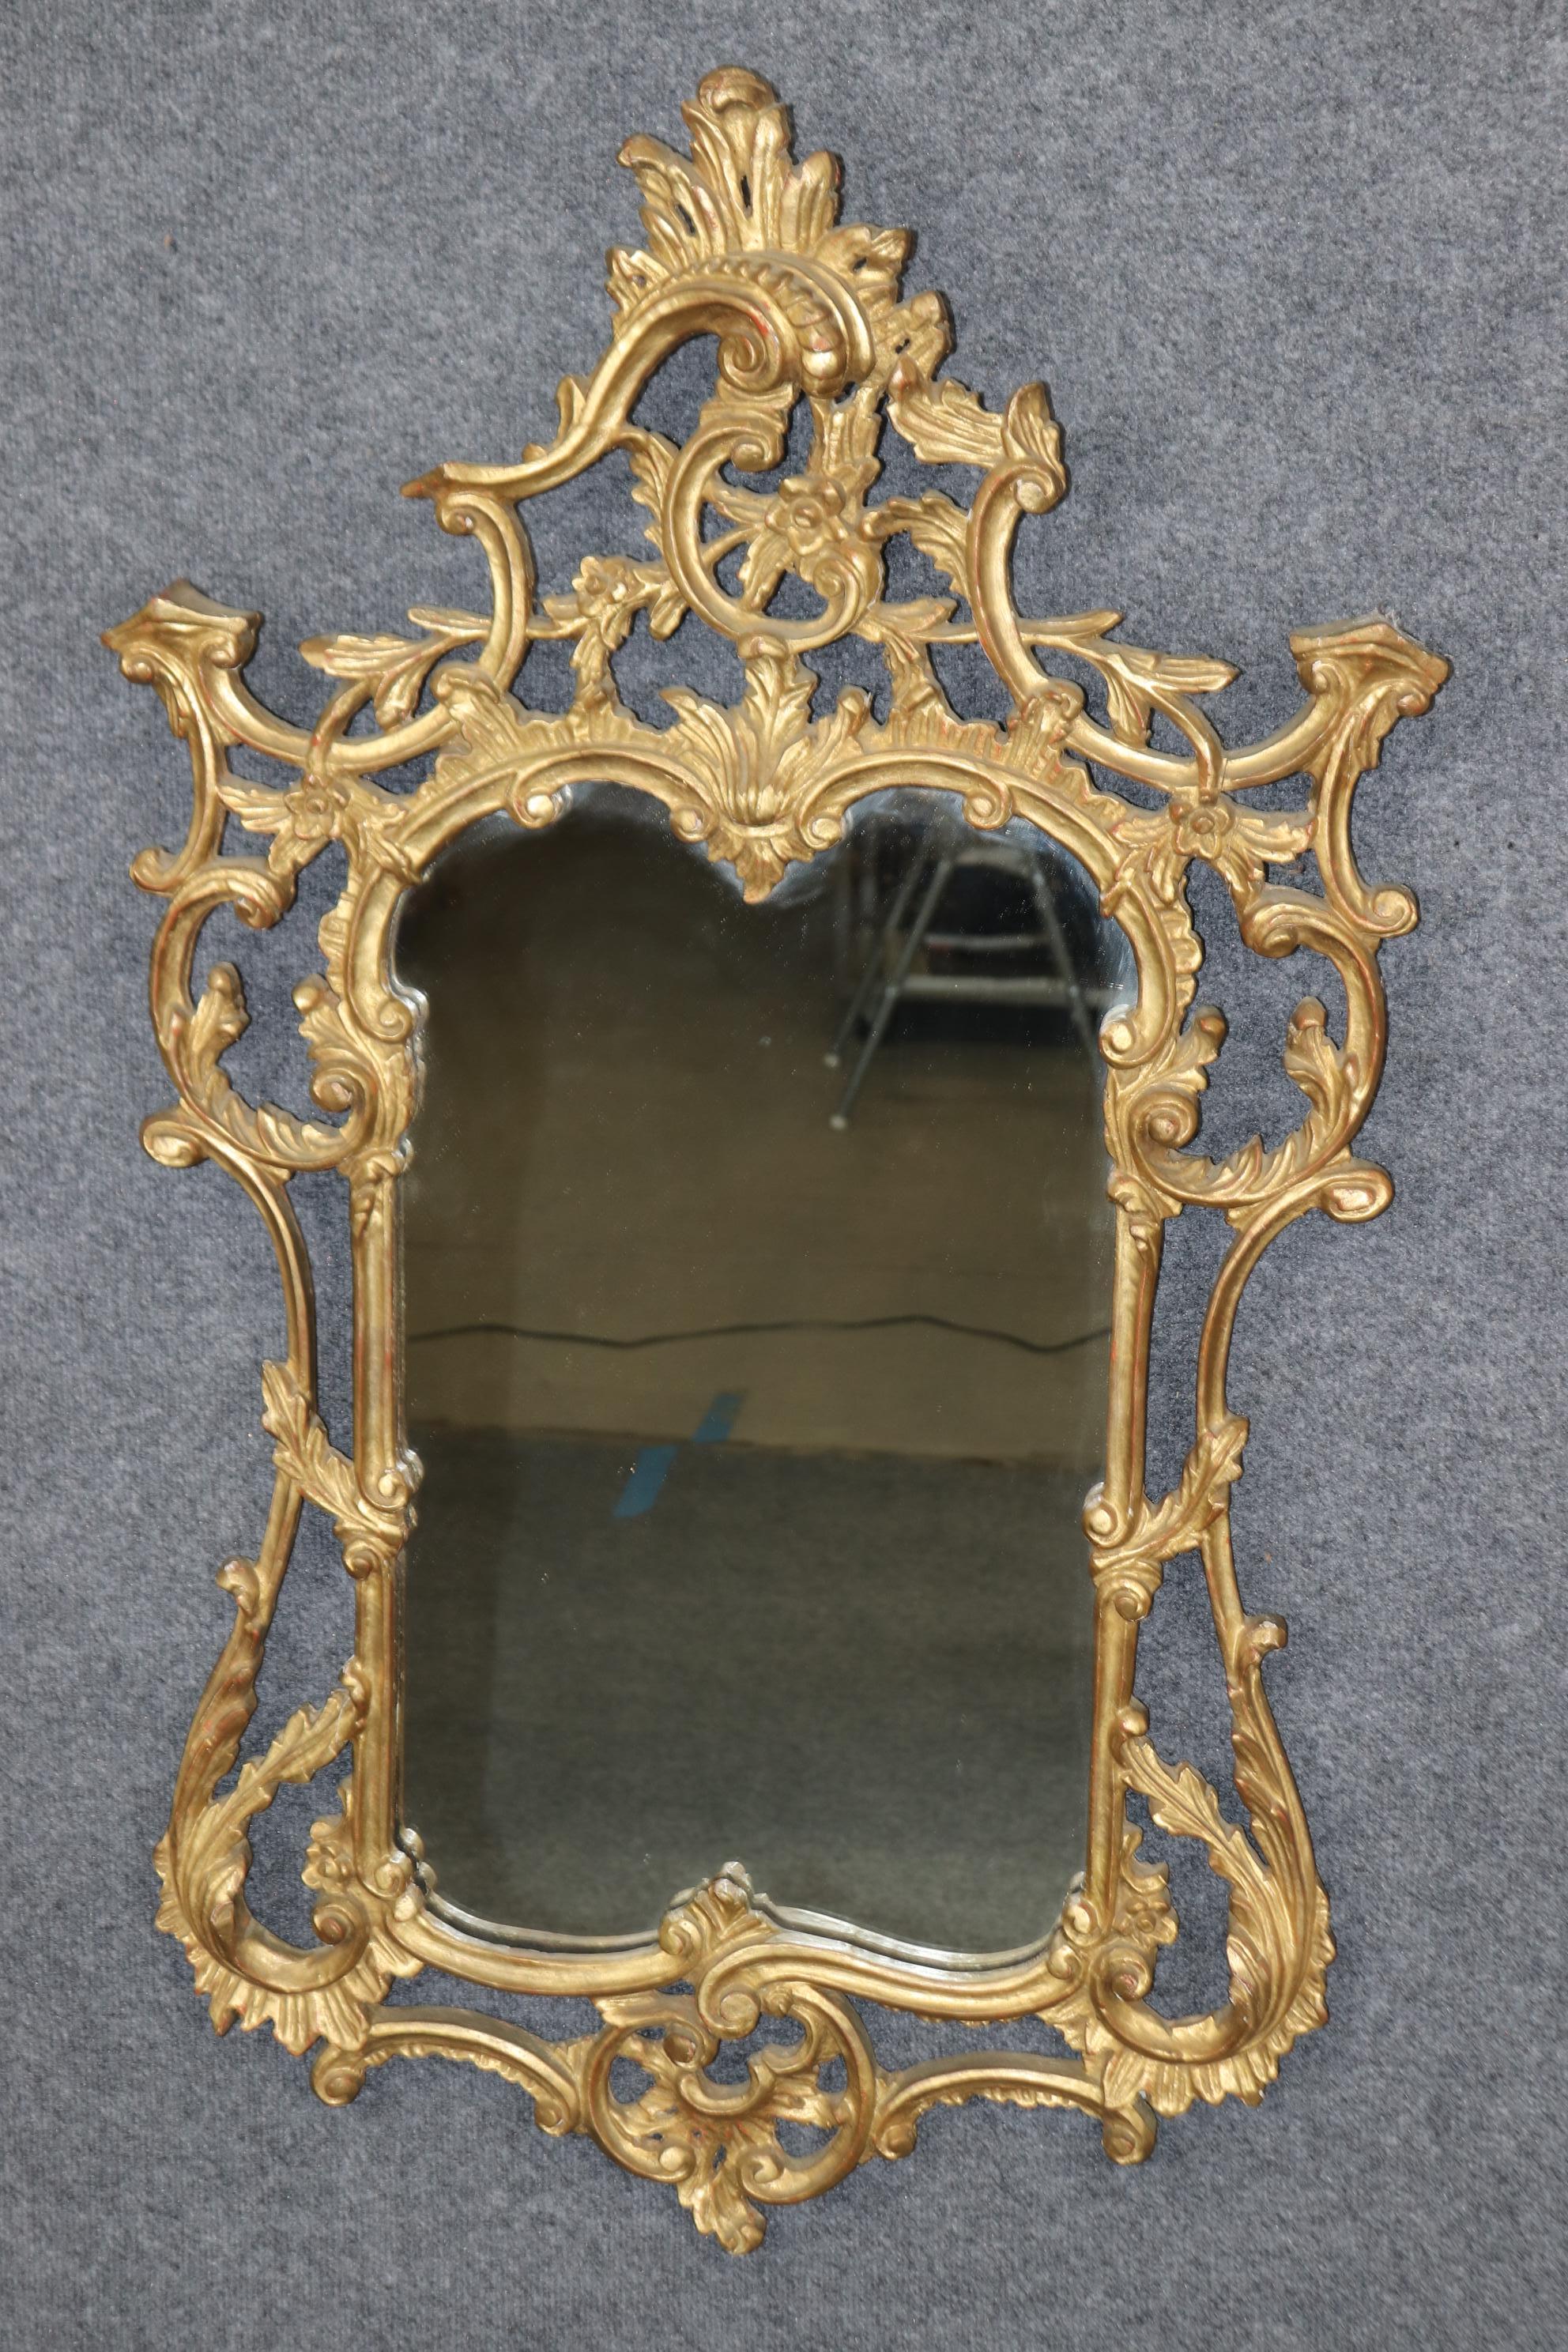 Dies ist ein hervorragendes Paar von geschnitztem Holz, nicht Gesso, in Italien hergestellten Spiegeln mit echtem Paket Blattgold Frames und klarem Spiegel Platte Glas Spiegeln. Die Spiegel sind ein hervorragendes Beispiel für den französischen